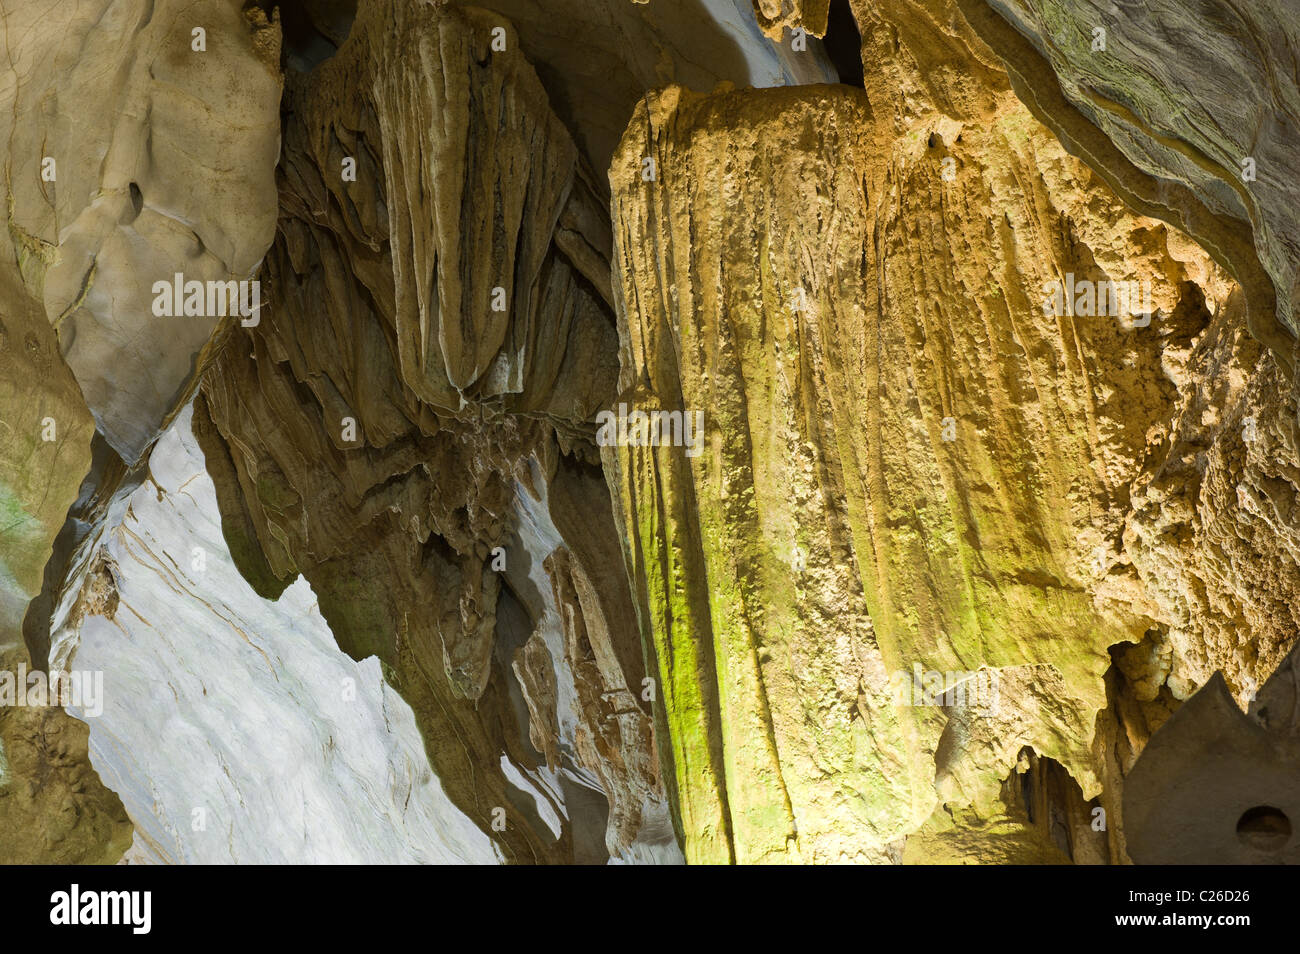 Cueva del Indio, grotte Indienne, Vinales, province de Pinar del Rio, Cuba Banque D'Images